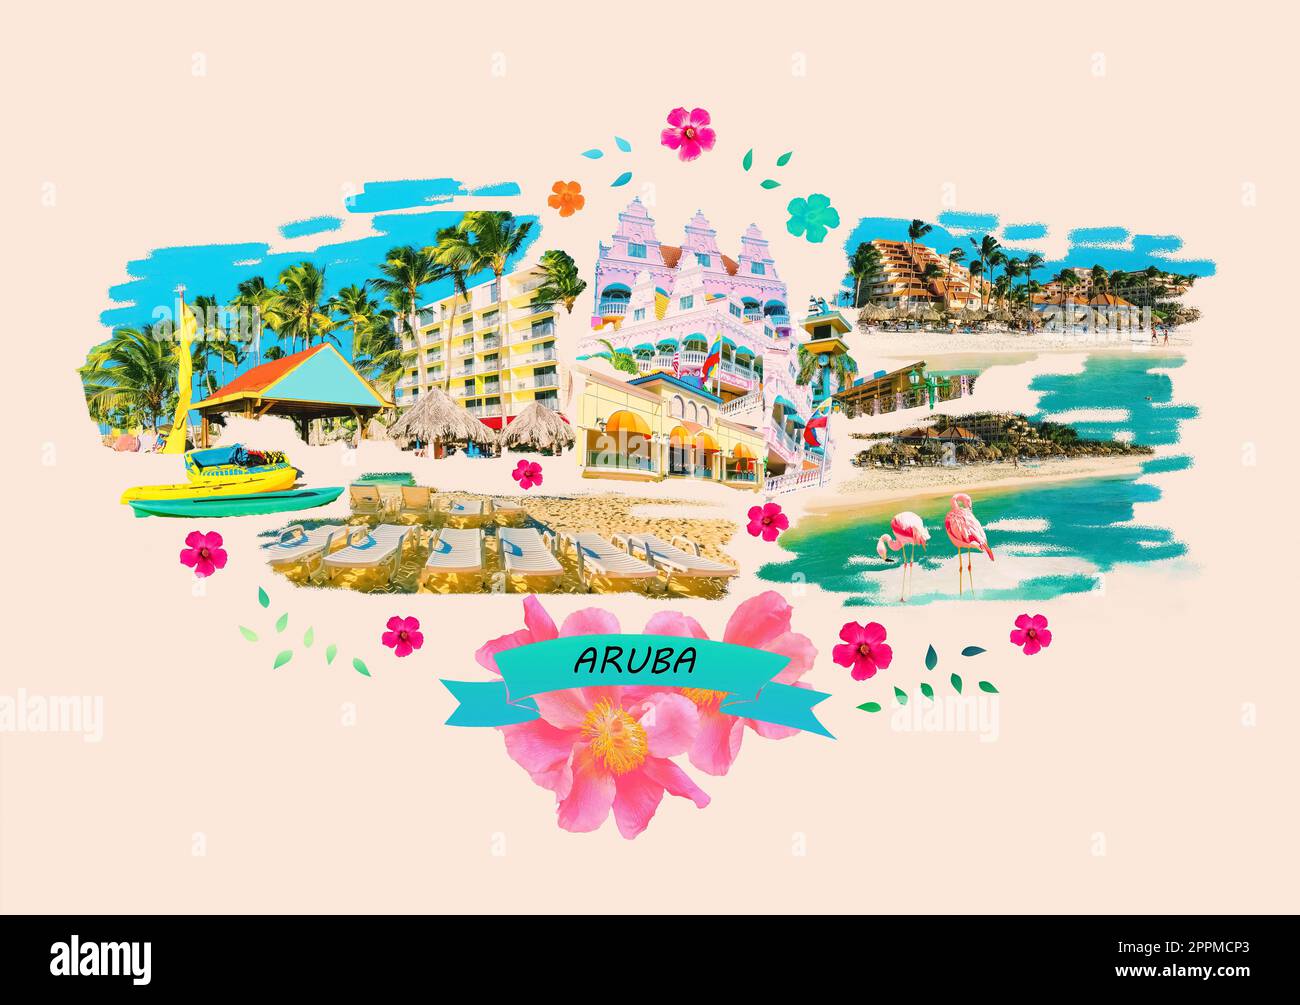 Collage über Aruba - holländische Provinz Oranjestad - wunderschöne karibische Insel. Kunstdesign Stockfoto